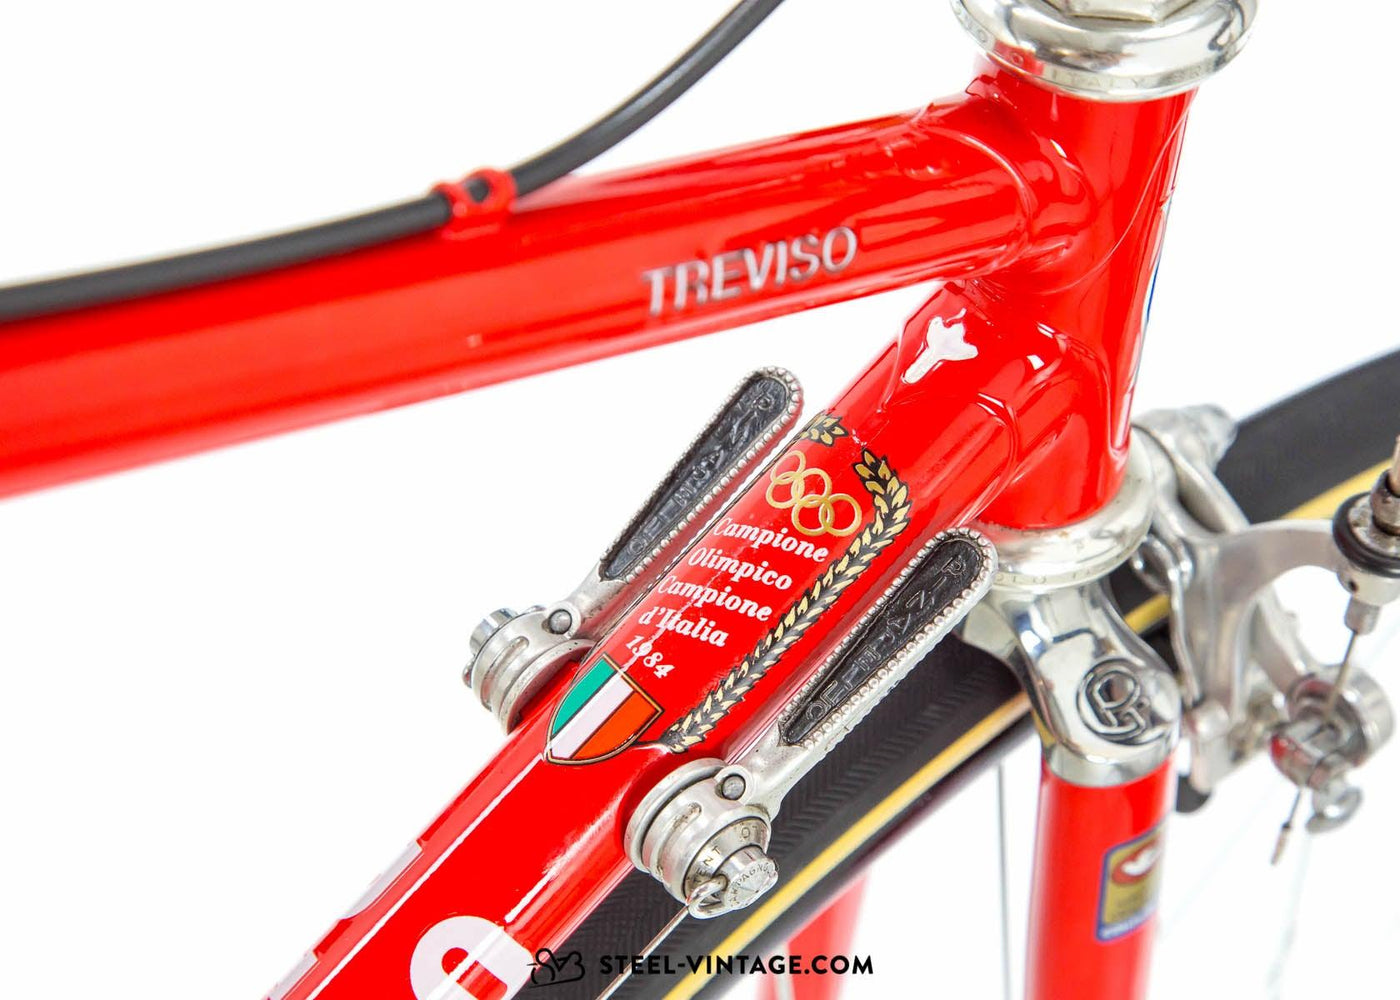 Pinarello Treviso Classic Road Bike 1980s - Steel Vintage Bikes